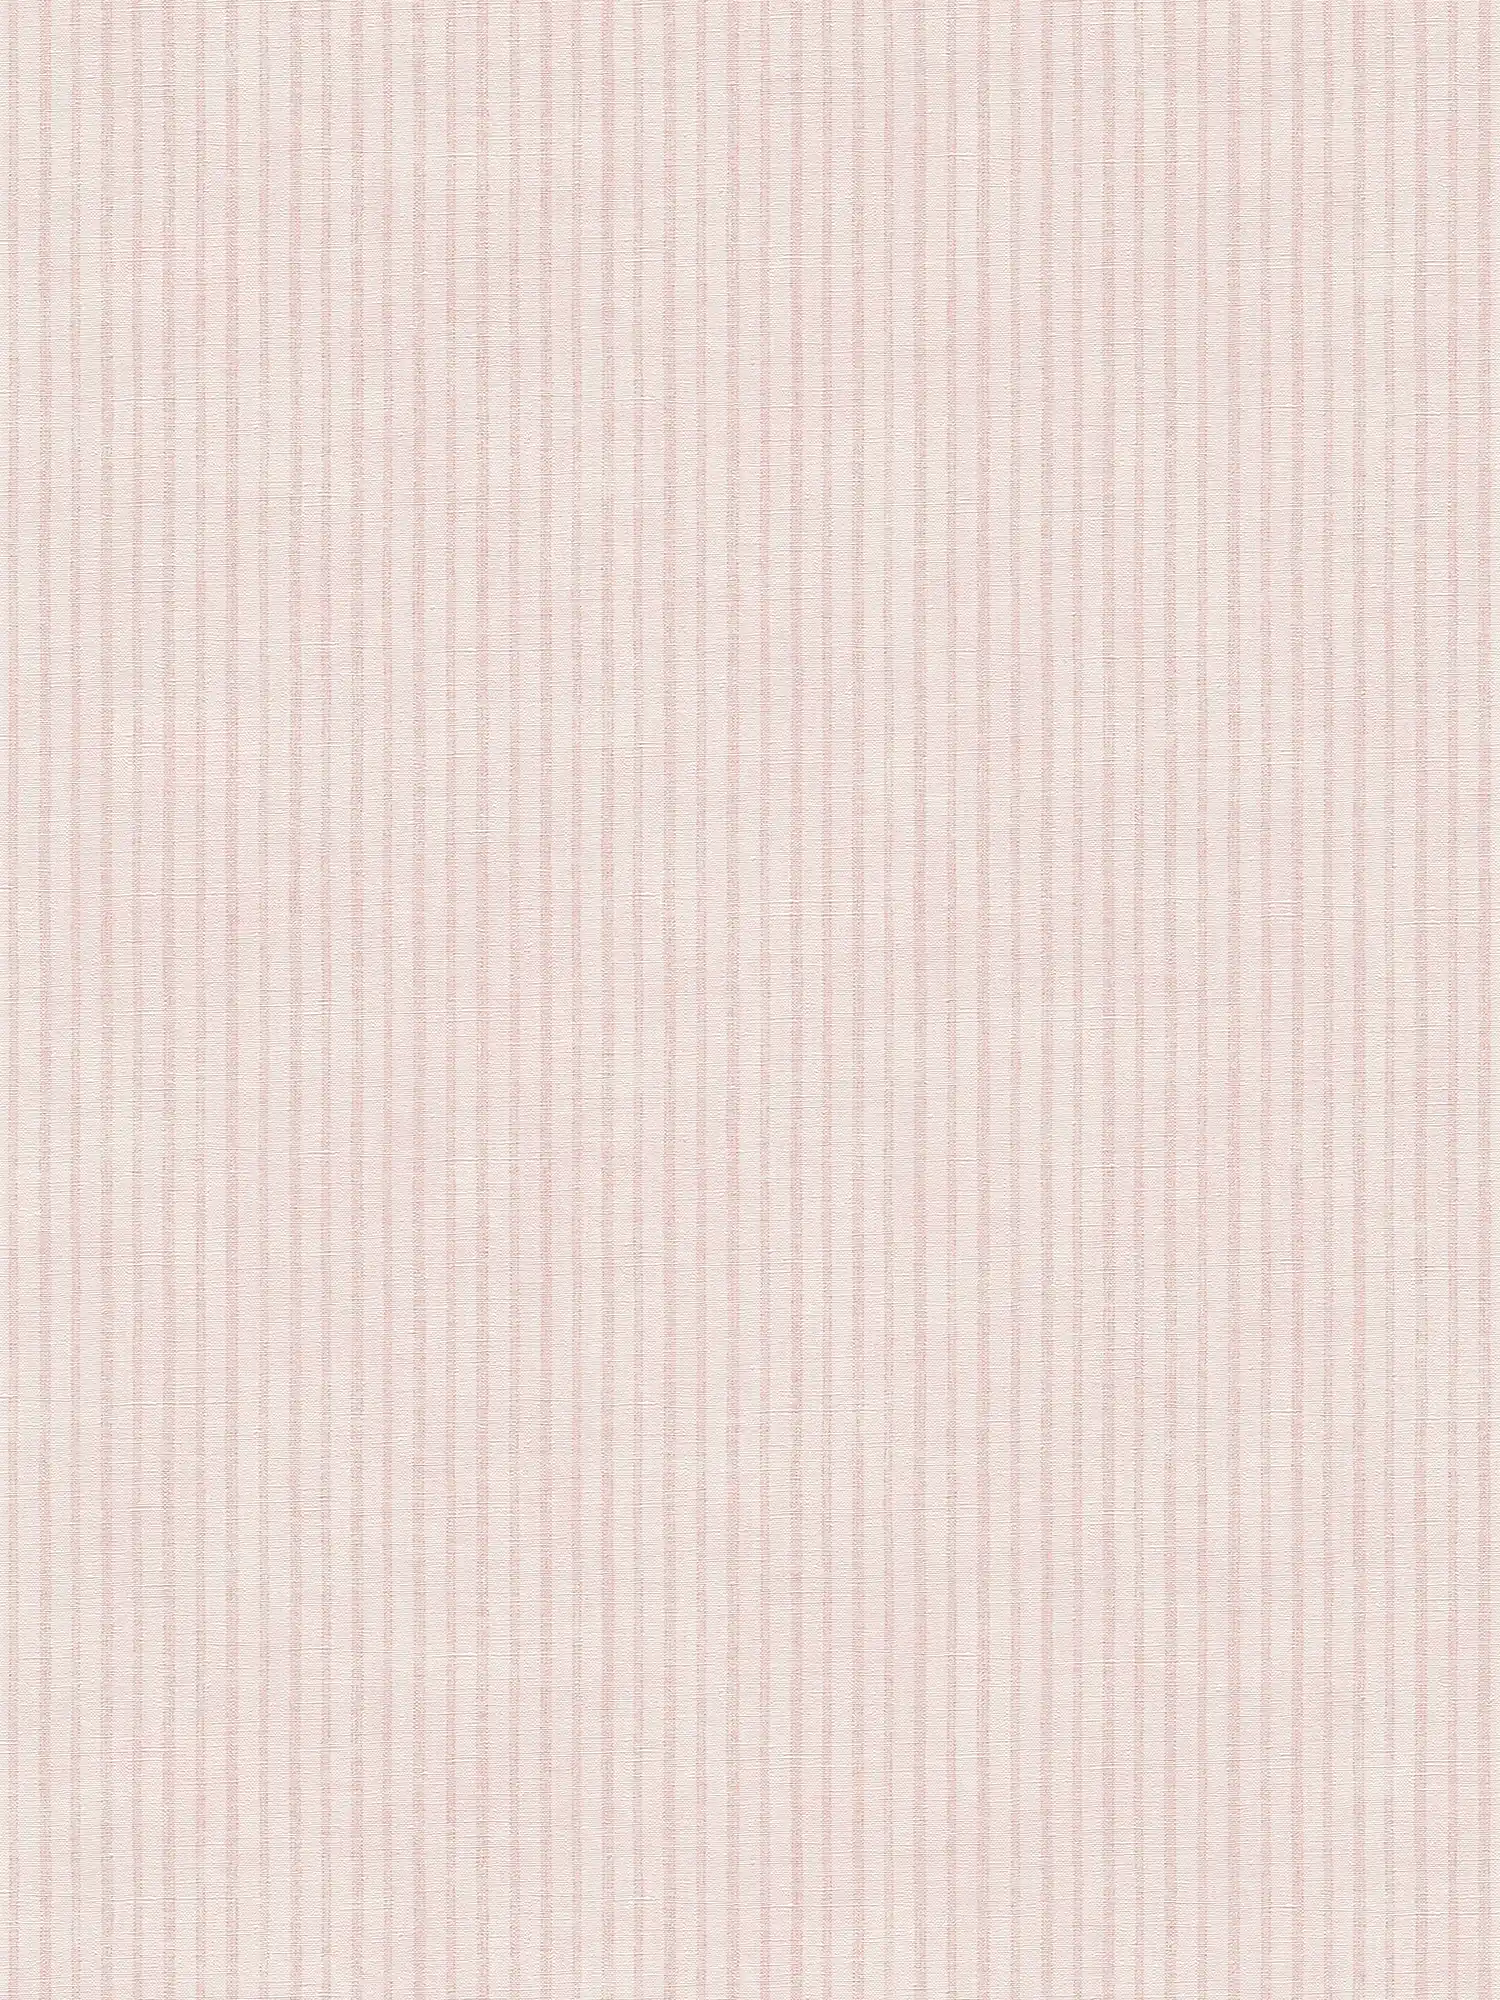 Gestreept behang in landelijke stijl - crème, roze
